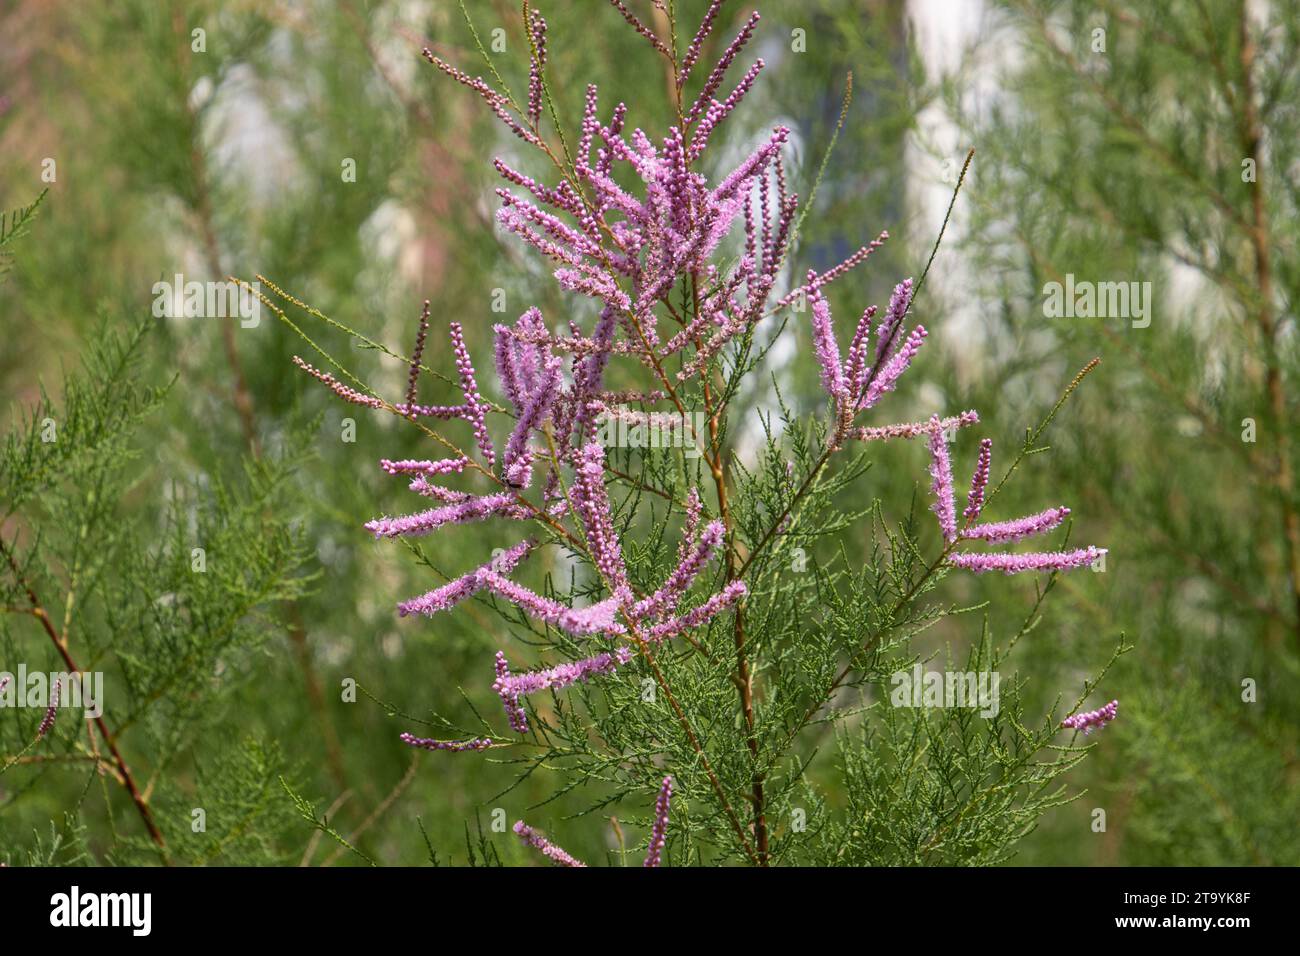 Blüten einer tamarix ramosissima, auch Salzzeder oder Tamariske genannt Stockfoto